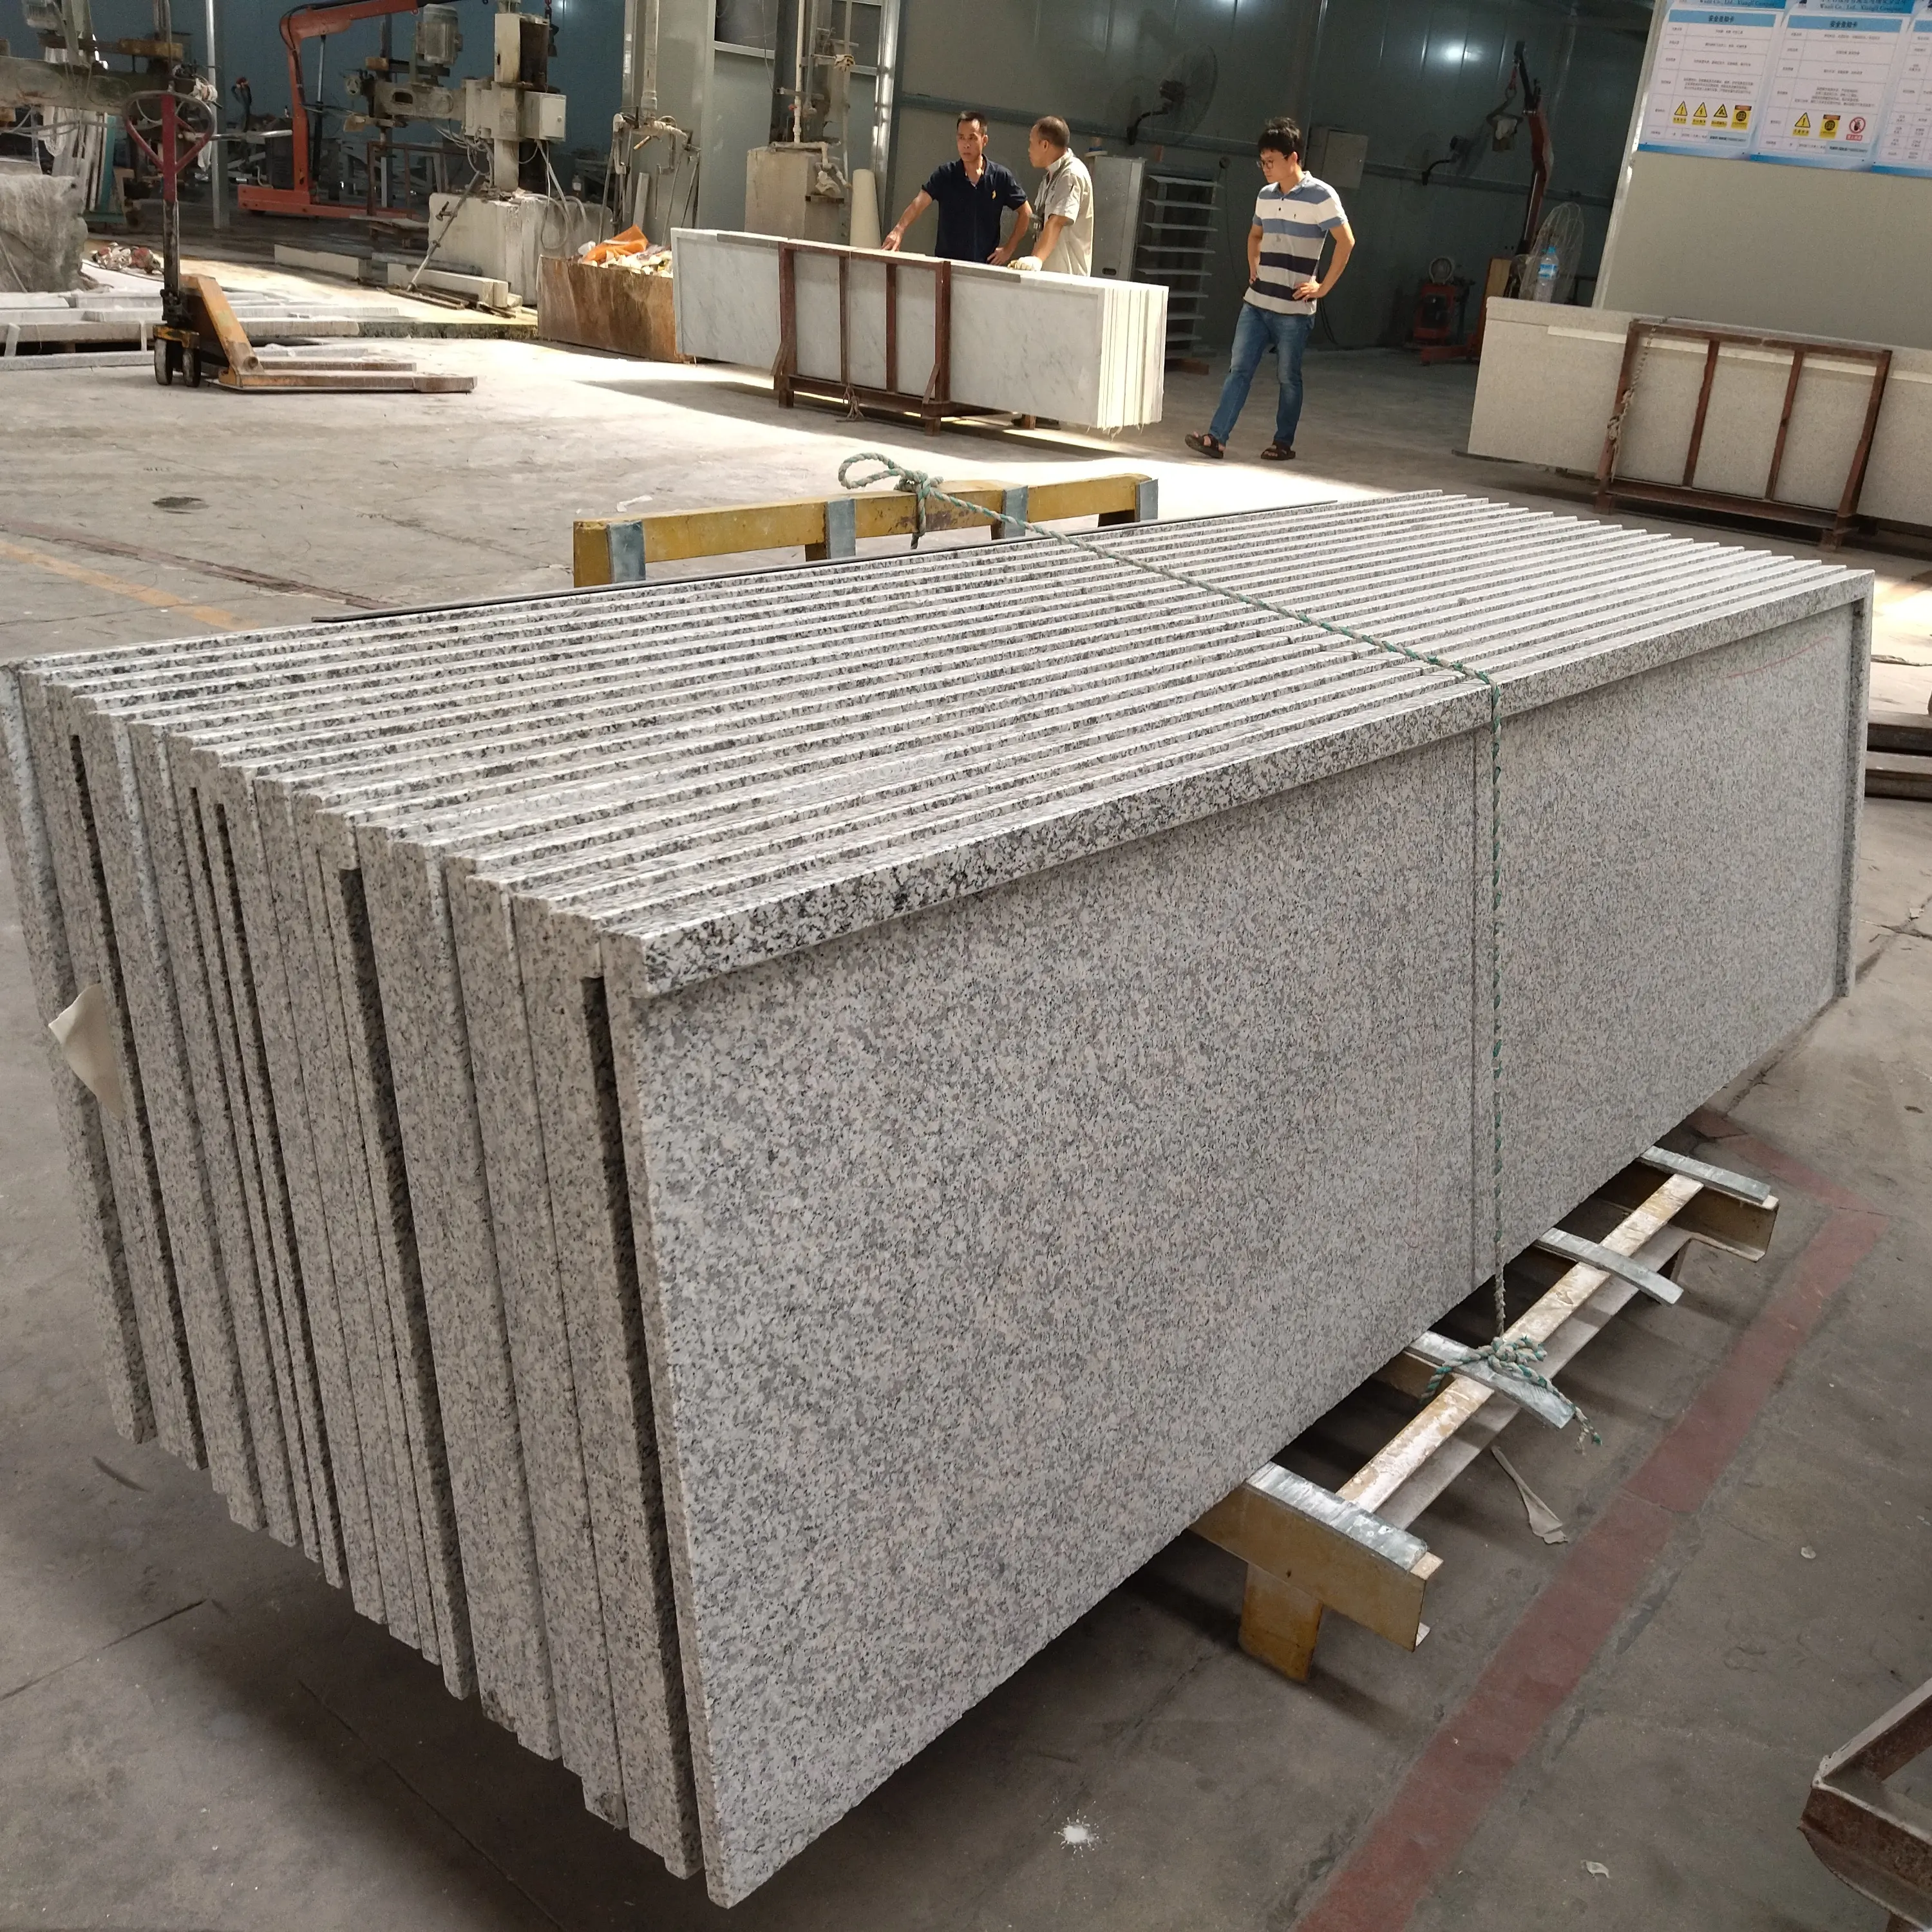 Coon granite Küchentisch Arbeits platte Variety Counter Top Schneiden auf Granit Granit Stein Top Qualität 40 Fuß Platte Weiß